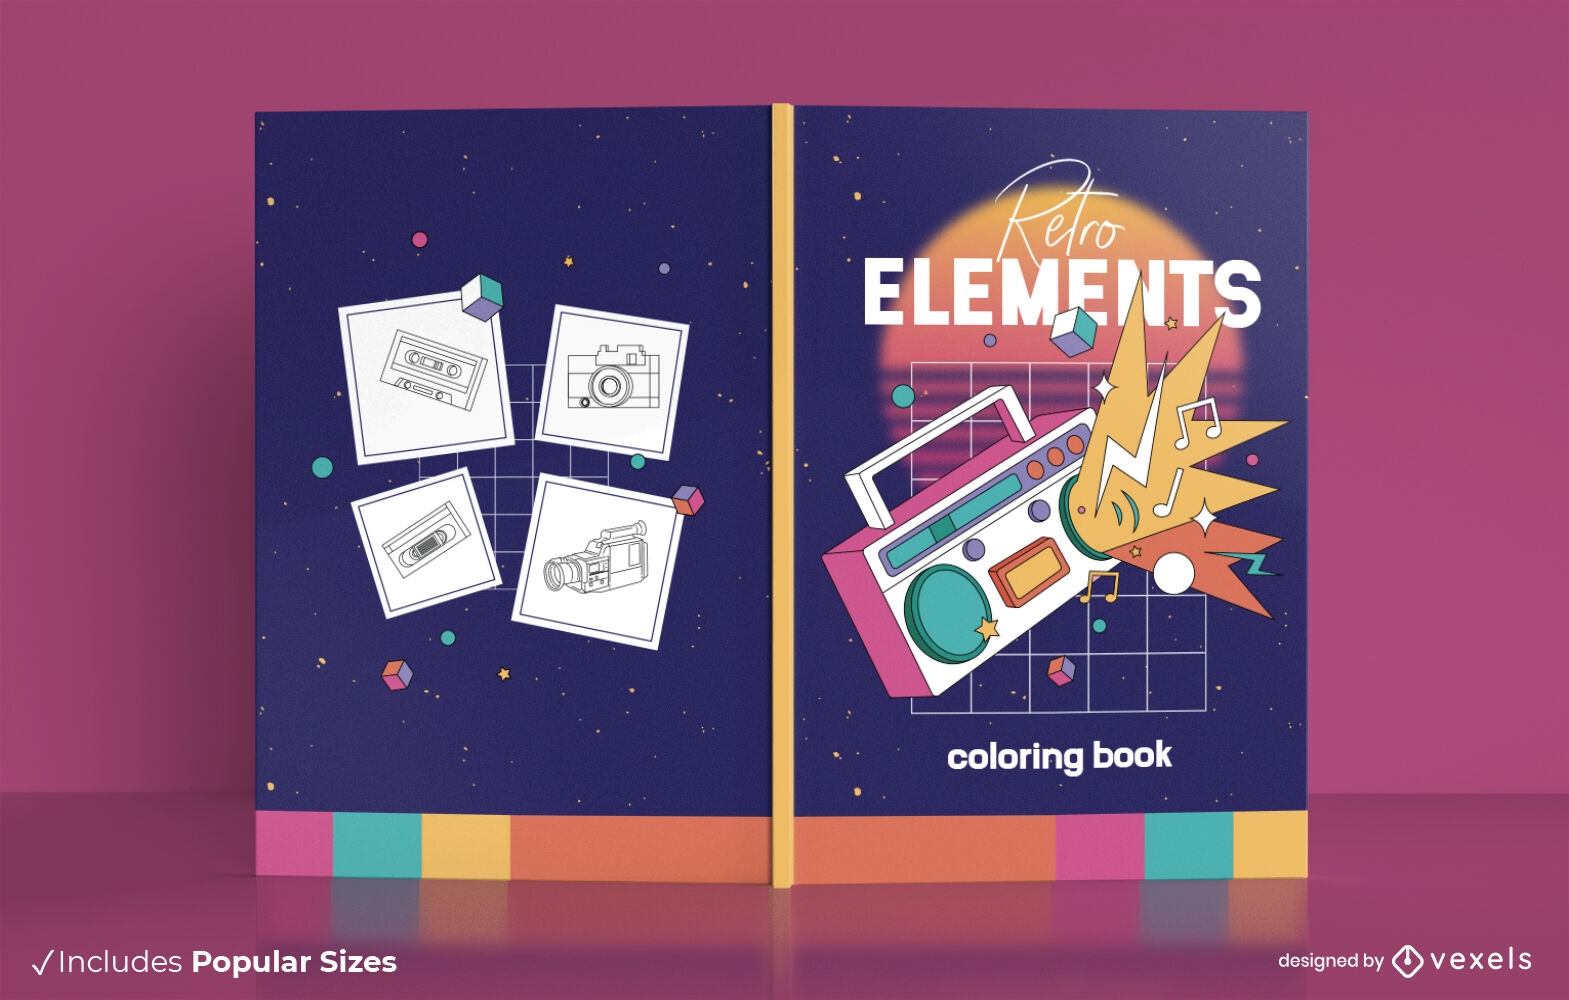 Retro elements book cover design